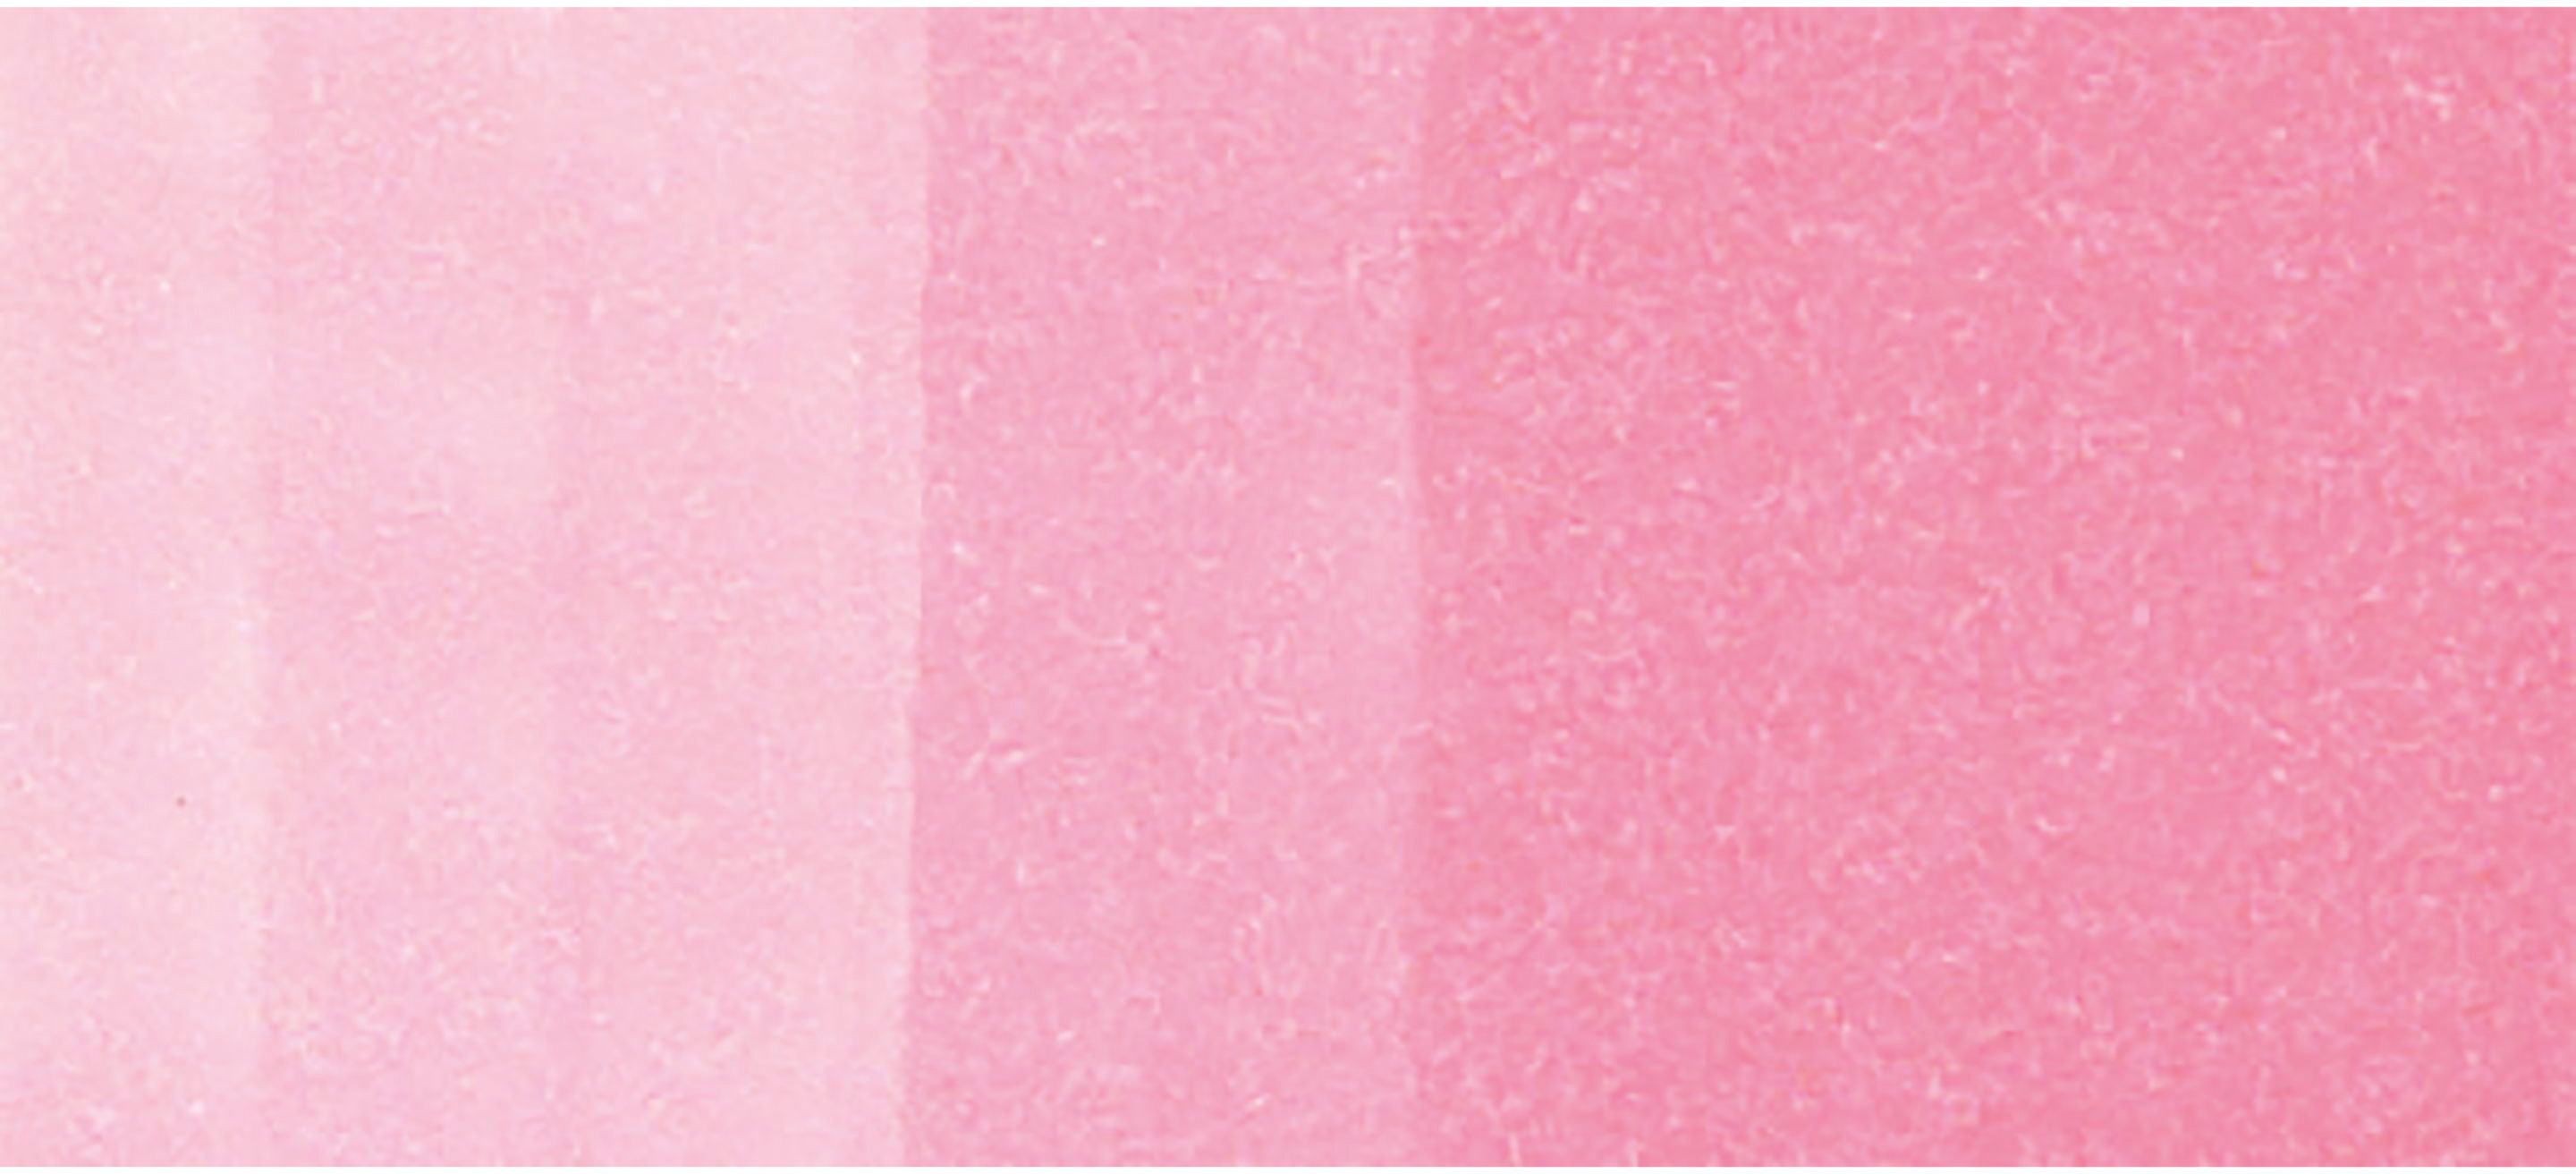 COPIC Marker Classic 20075176 RV02 - Sugared Almond Pink